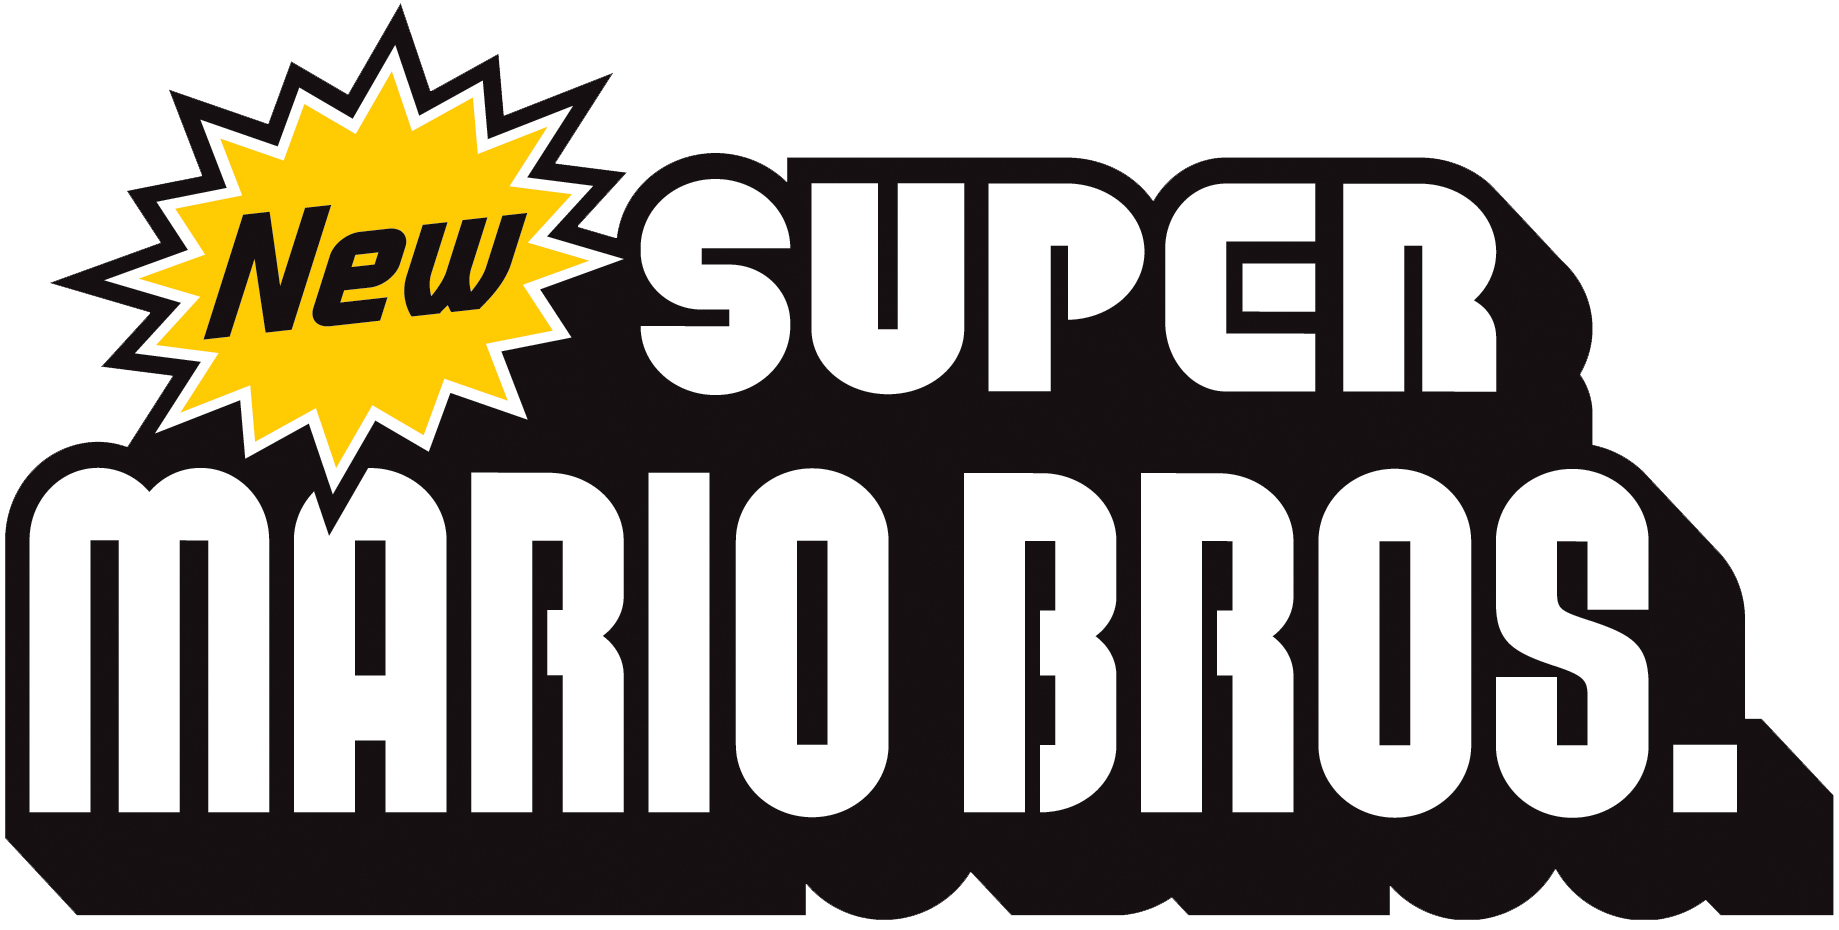 Play New Super Mario Bros. (USA), a game of Mario bros